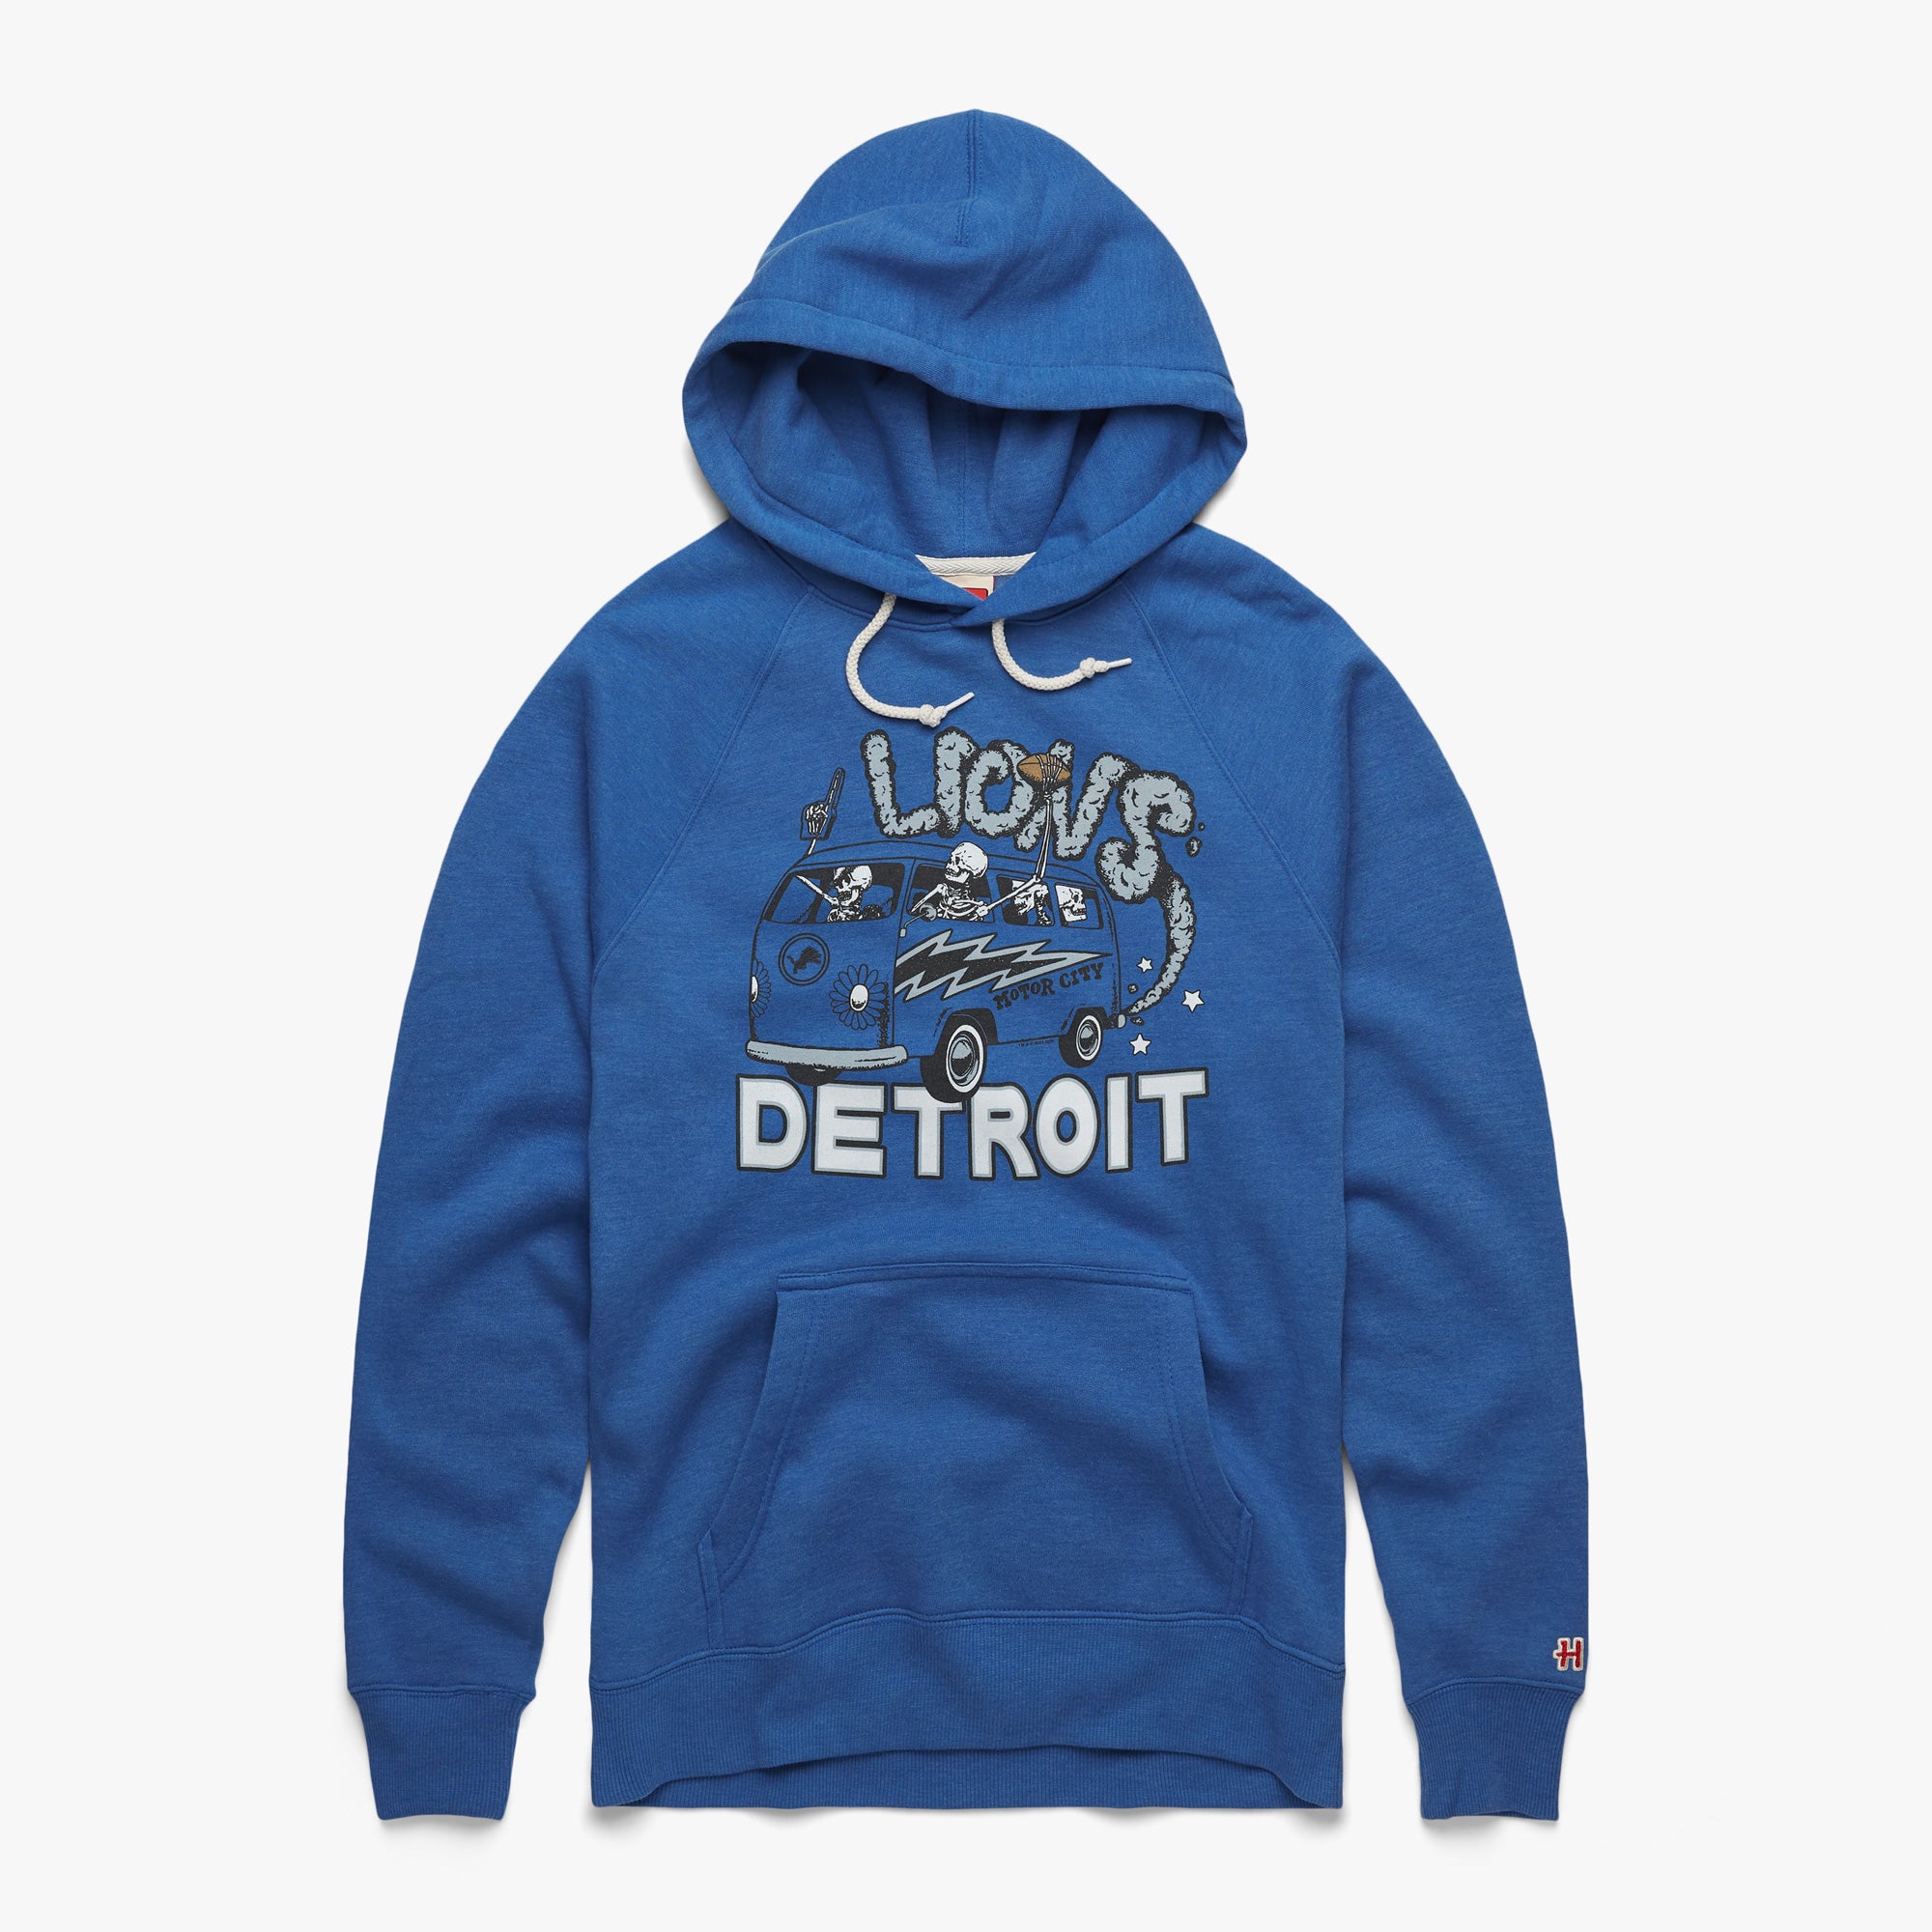 NFL Detroit Lions Grateful Dead Fan Fan Football T-Shirt